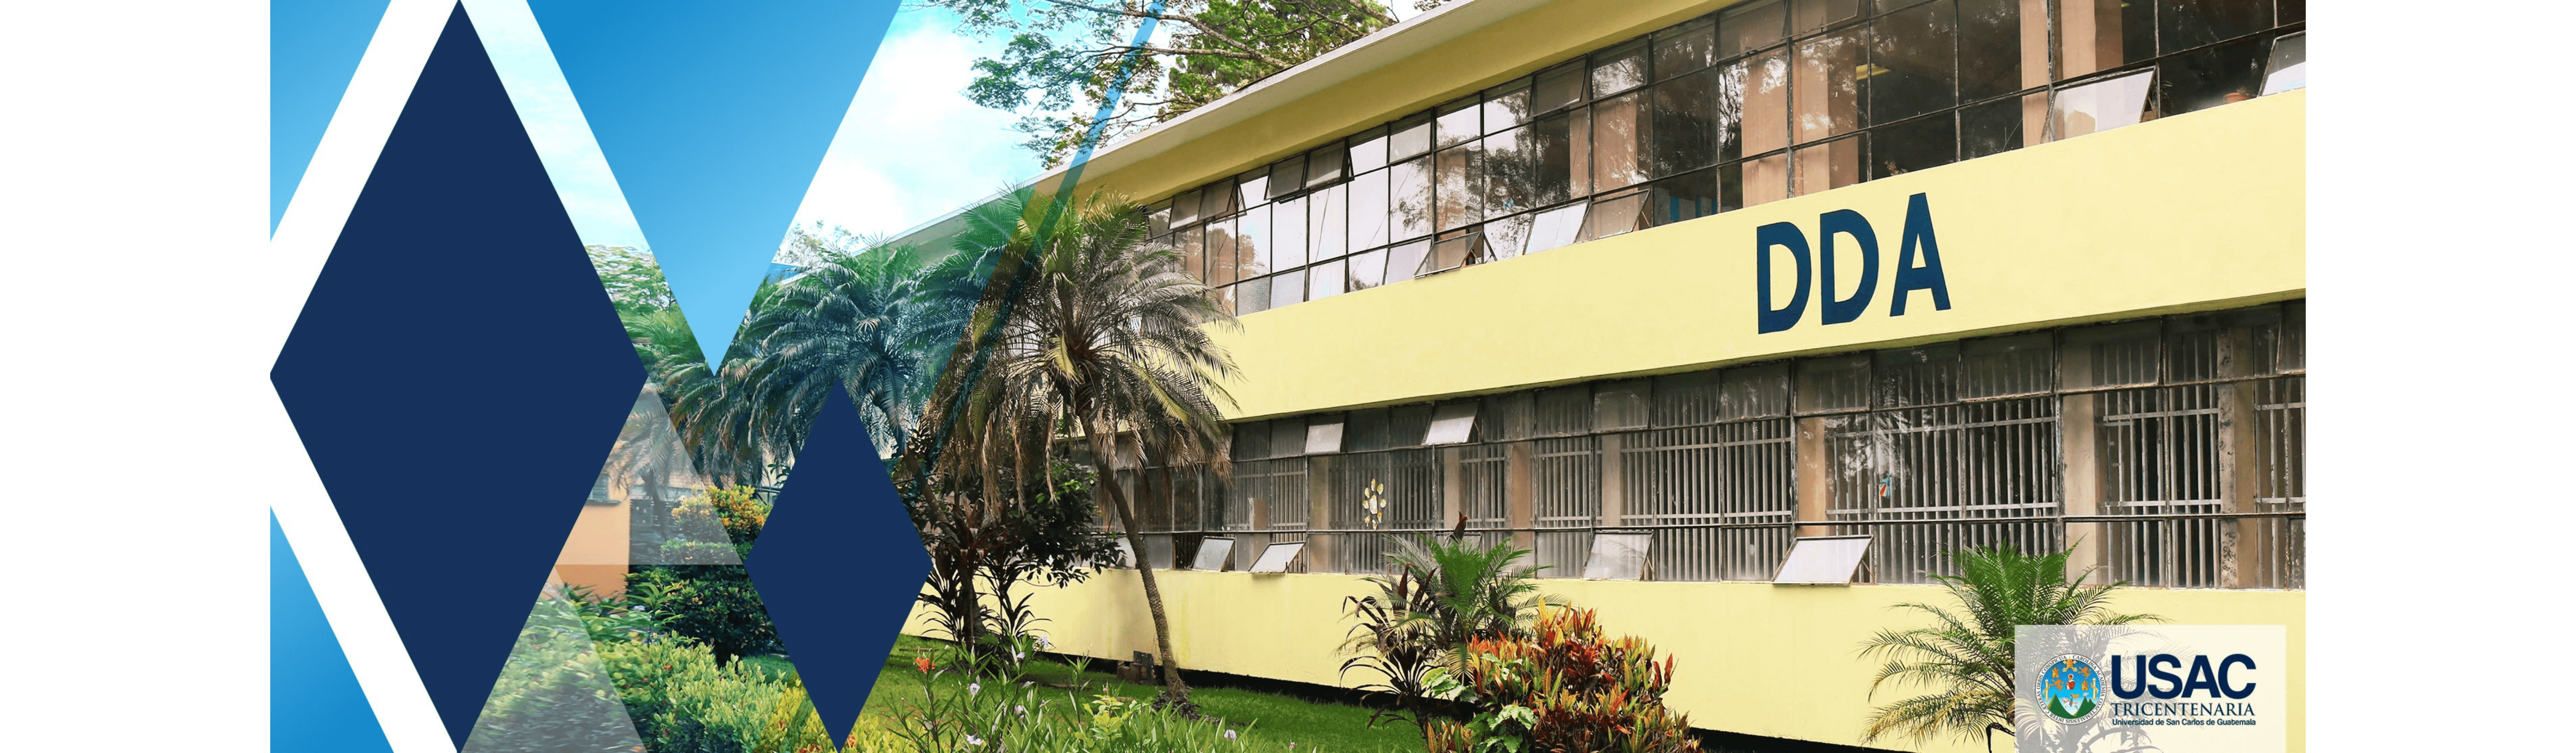 Edificio DDA Banner (1)